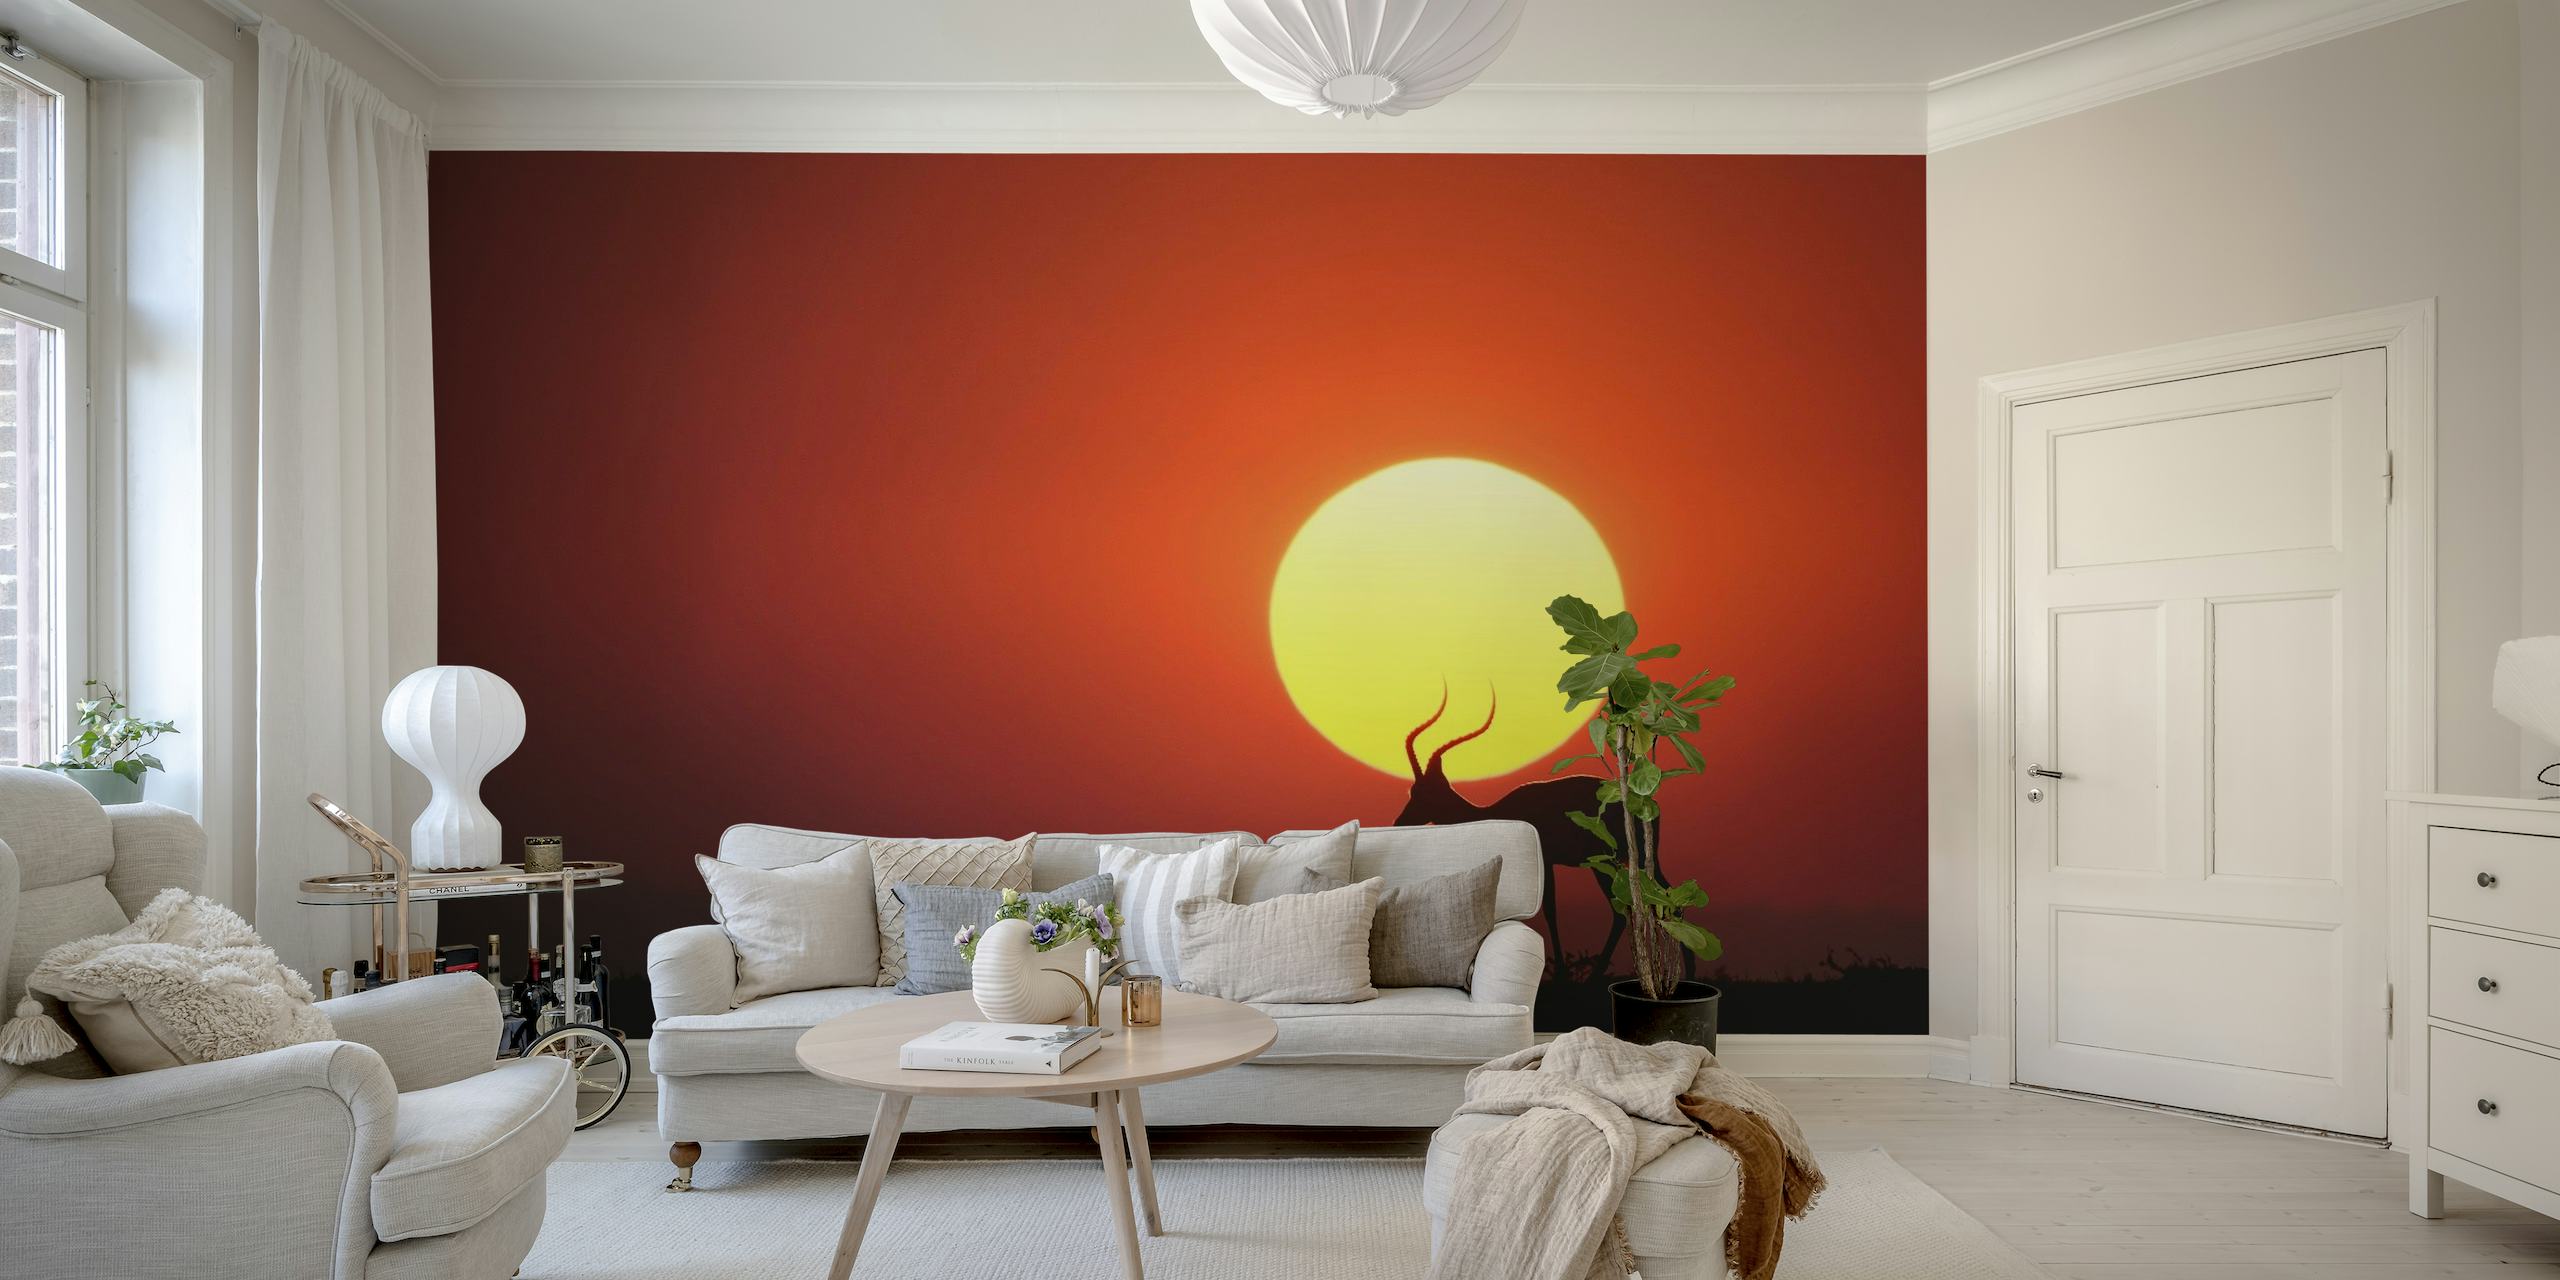 An African Sunset wallpaper